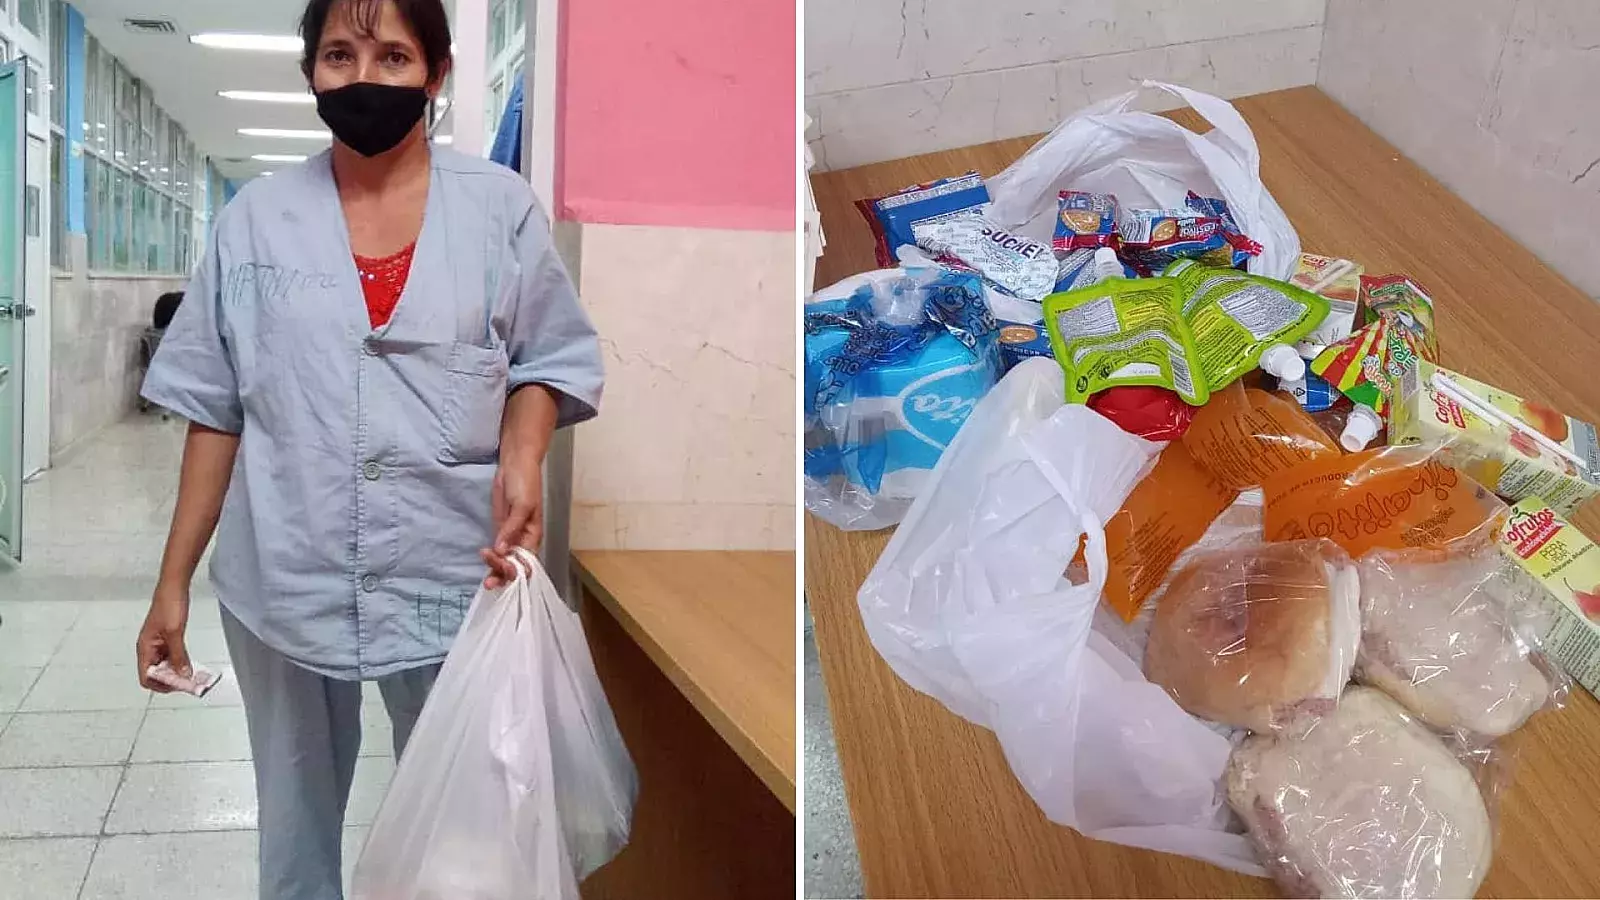 Comienza a llegar ayuda a madre cubana y su hijo ingresados en hospital de Holguín